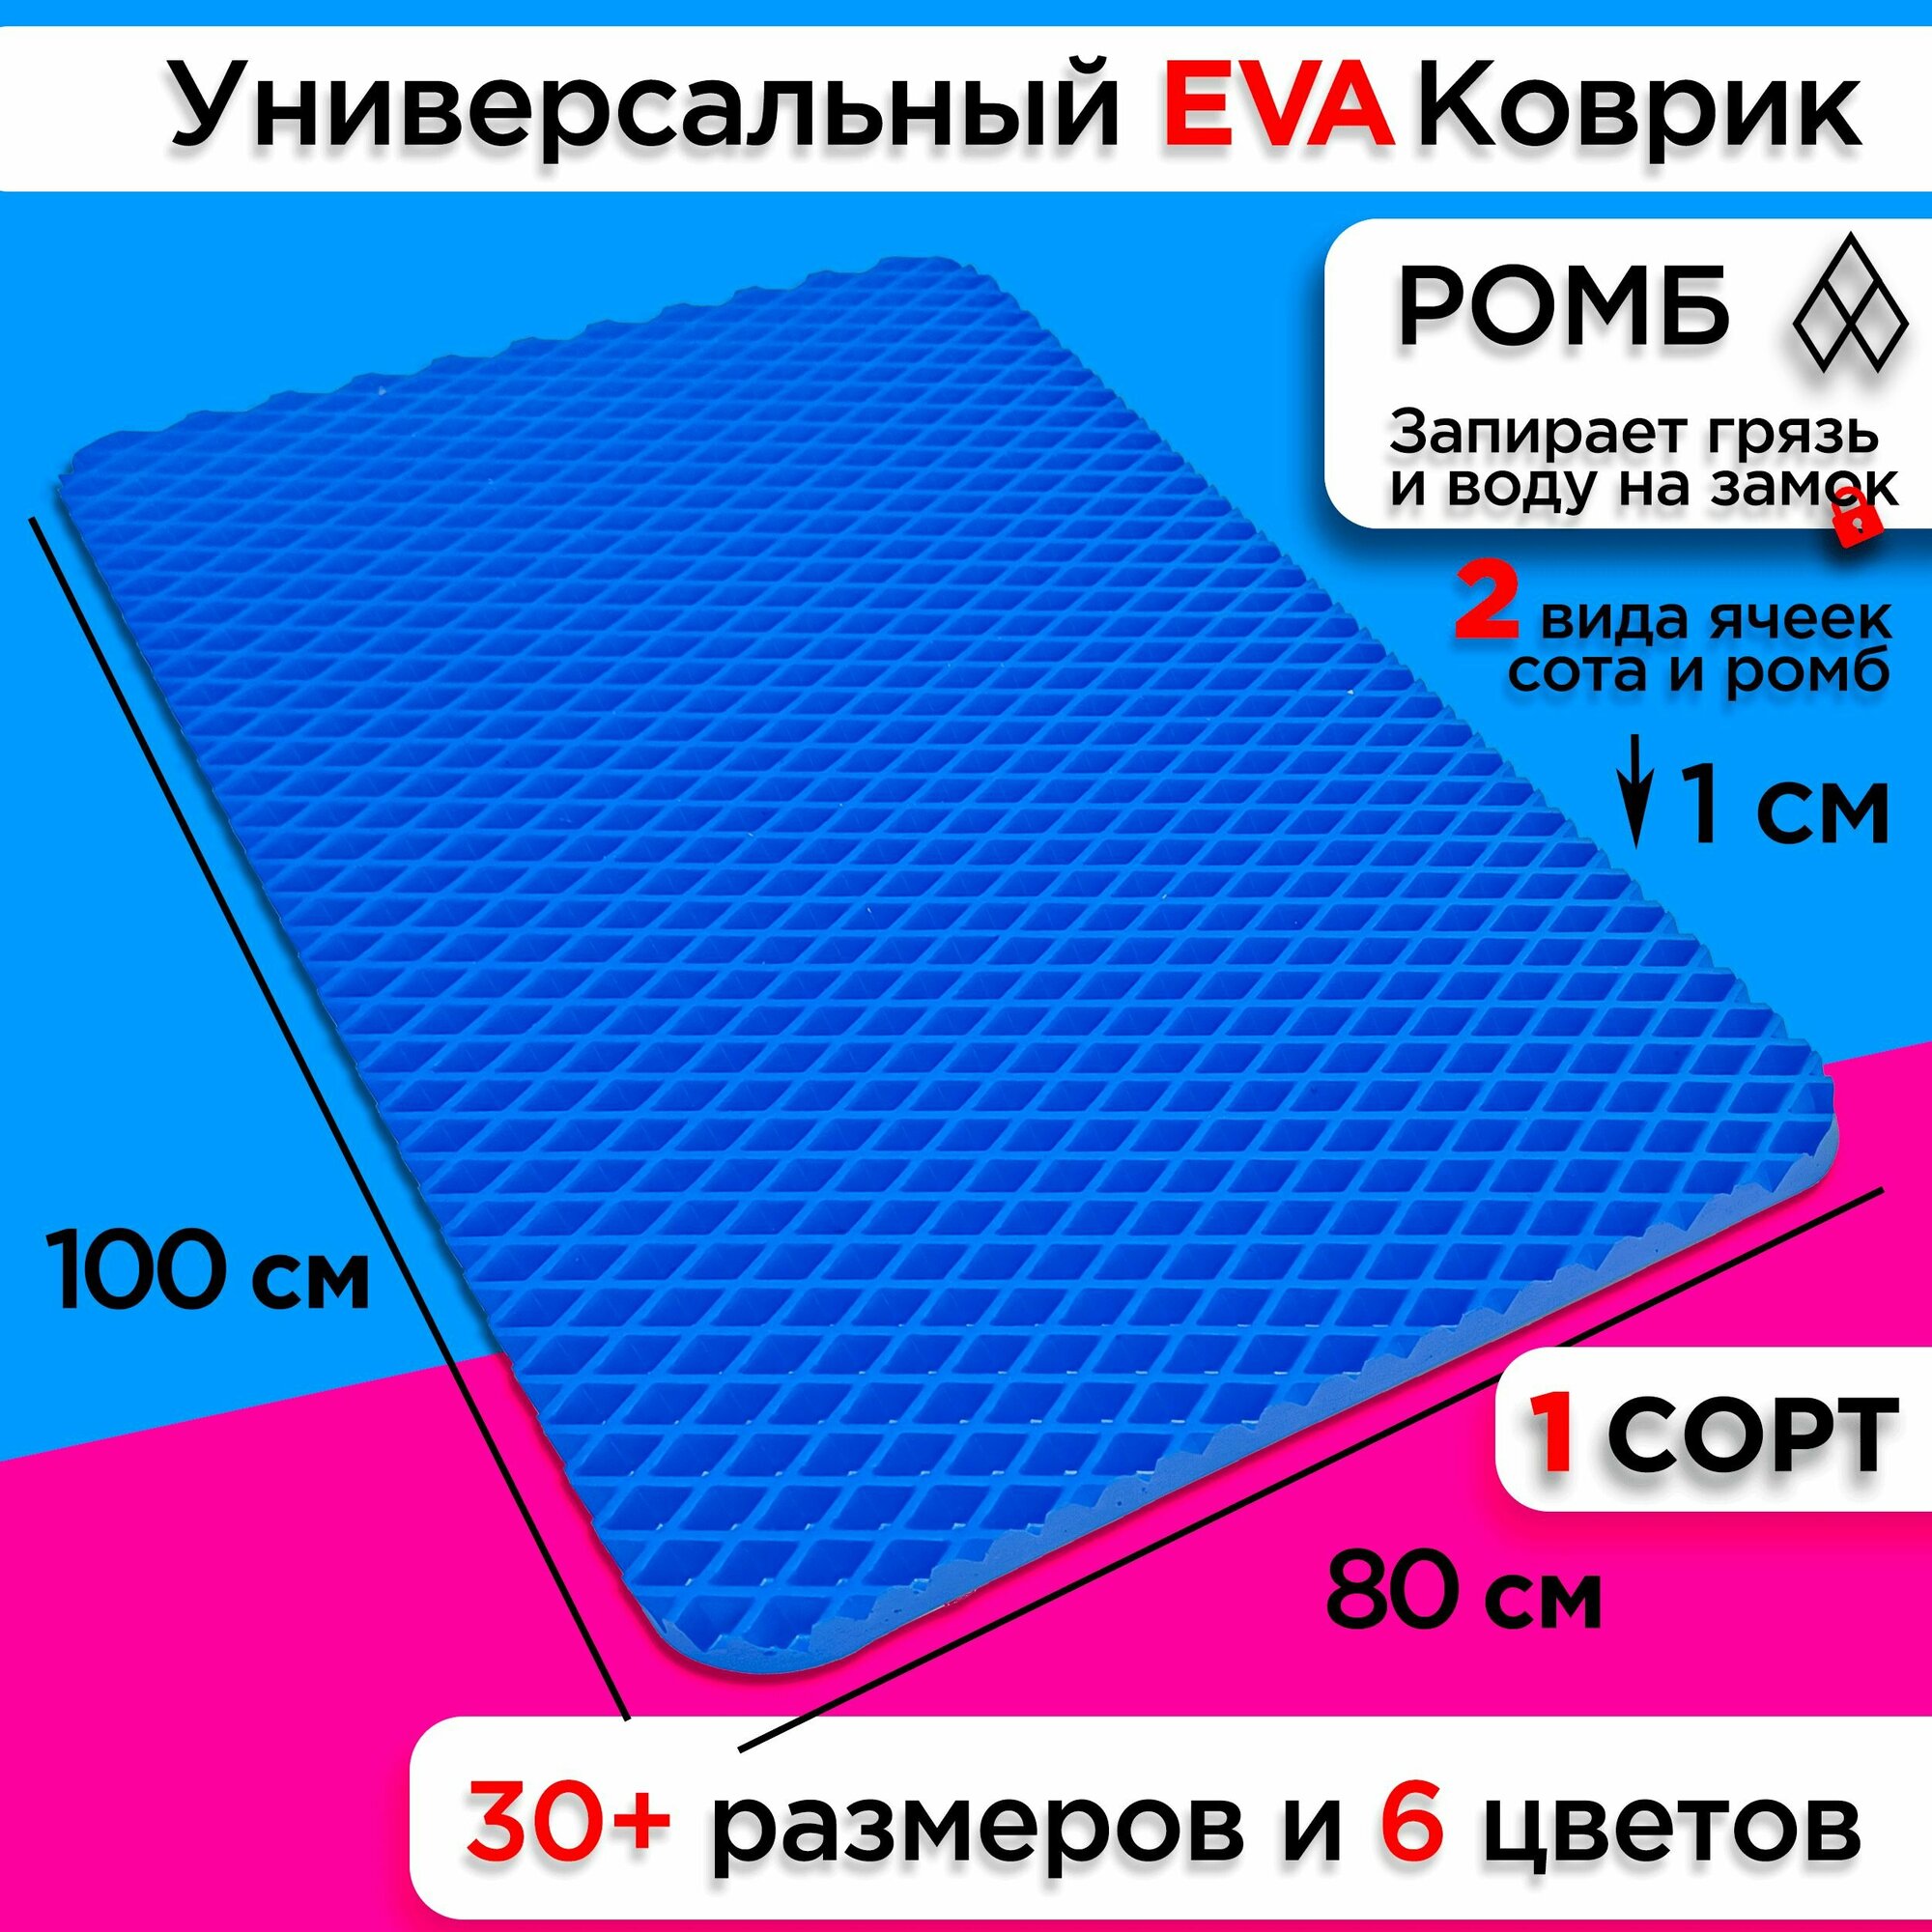 Коврик придверный EVA 100 х 80 см грязезащитный входной в прихожую износостойкий ковер на пол под обувь на кухню в шкаф